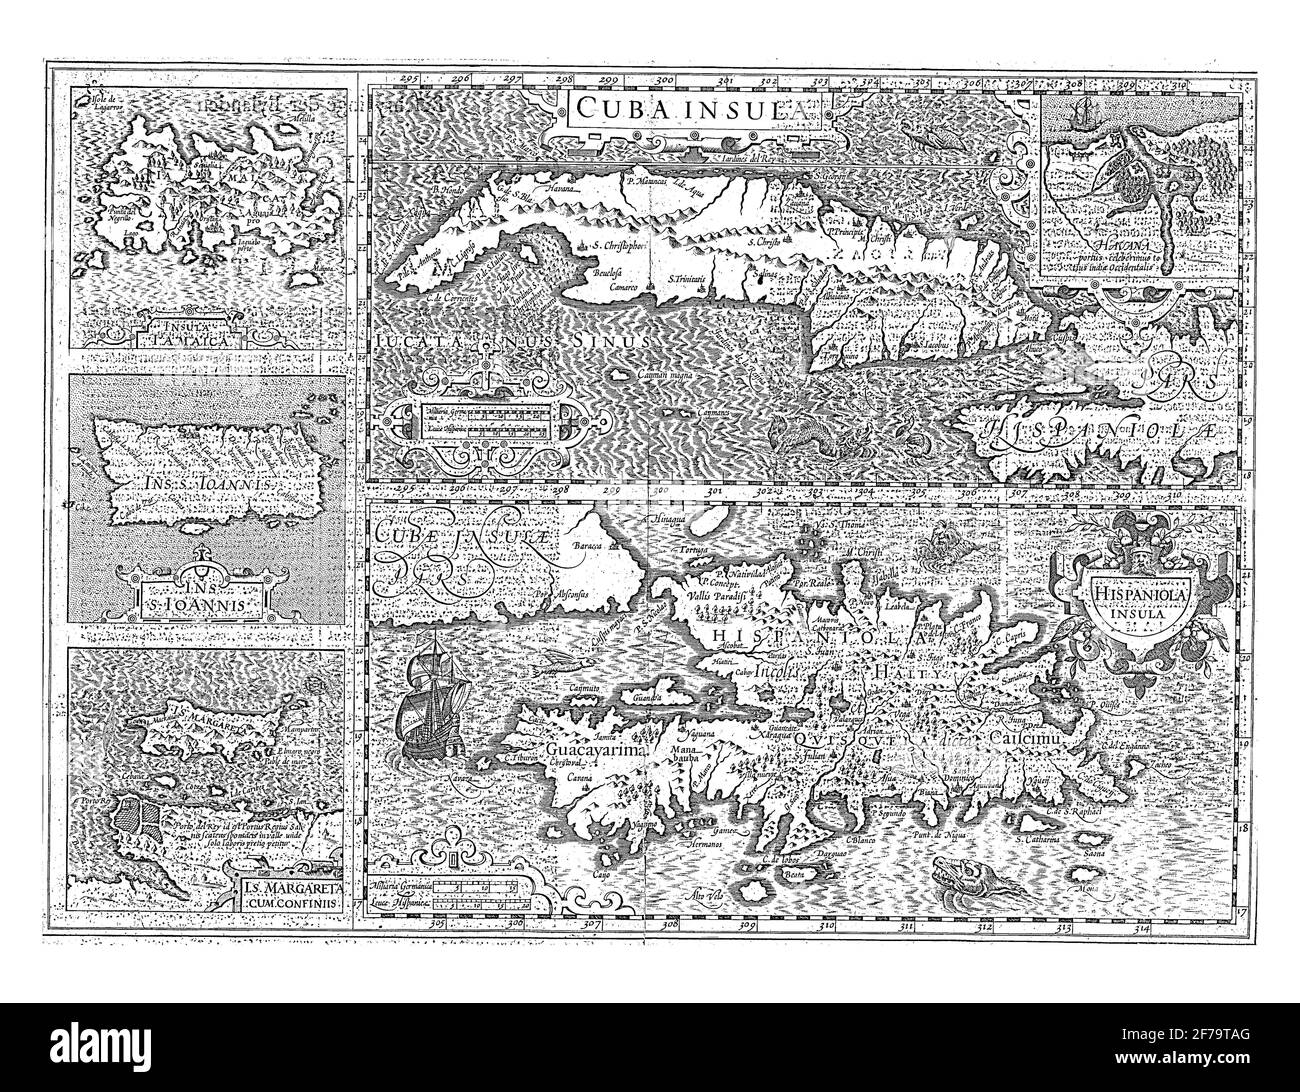 Carte de cinq îles des Caraïbes : Cuba, Haïti, Jamaïque, Porto Rico et Saint Margareta, gravure ancienne. Banque D'Images